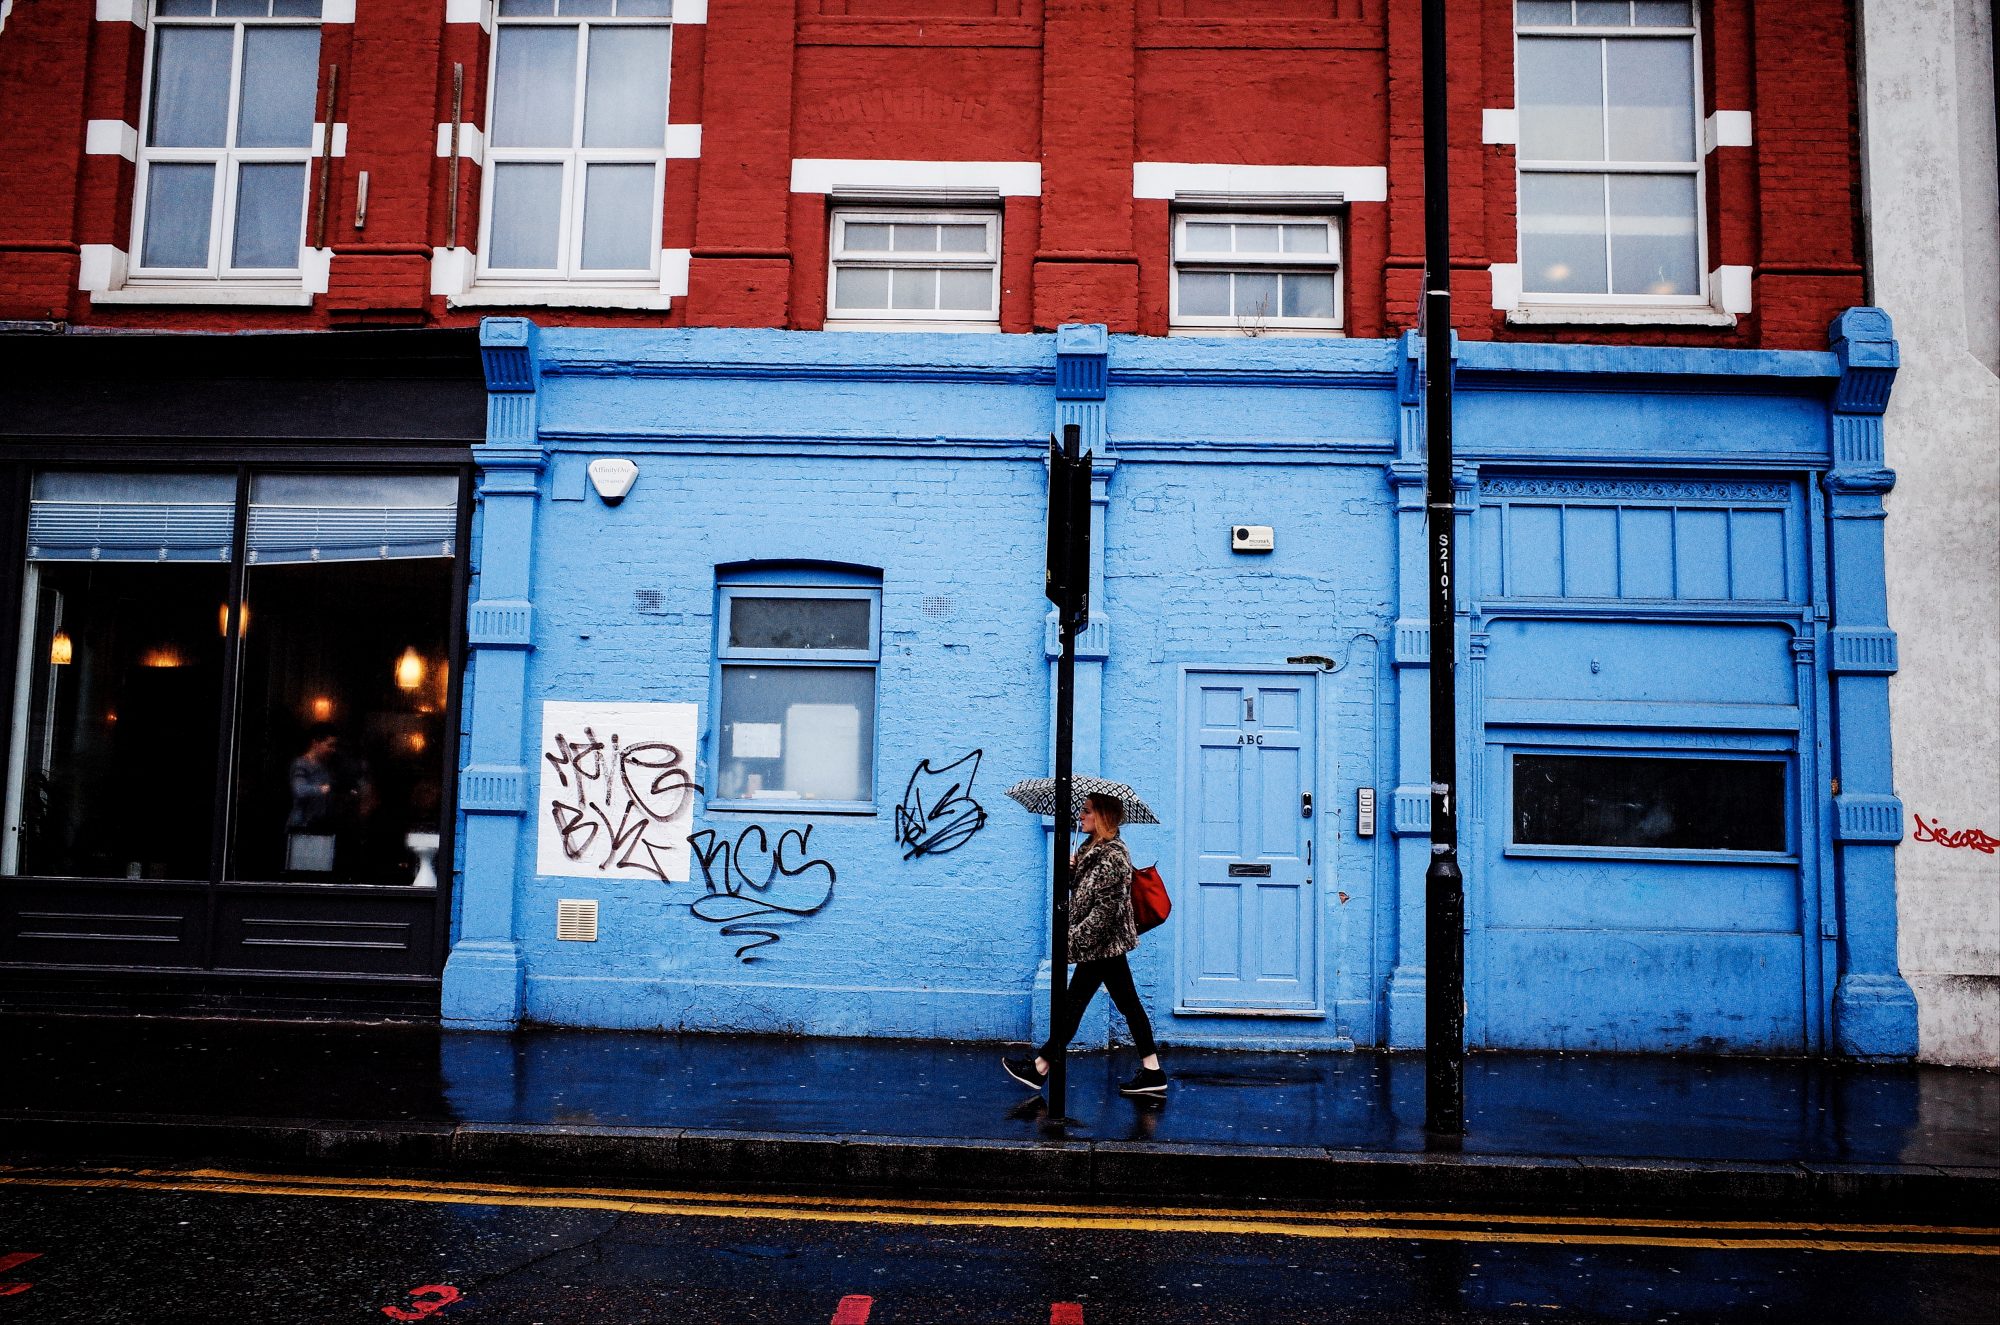 Red, blue, woman walking. London, 2018